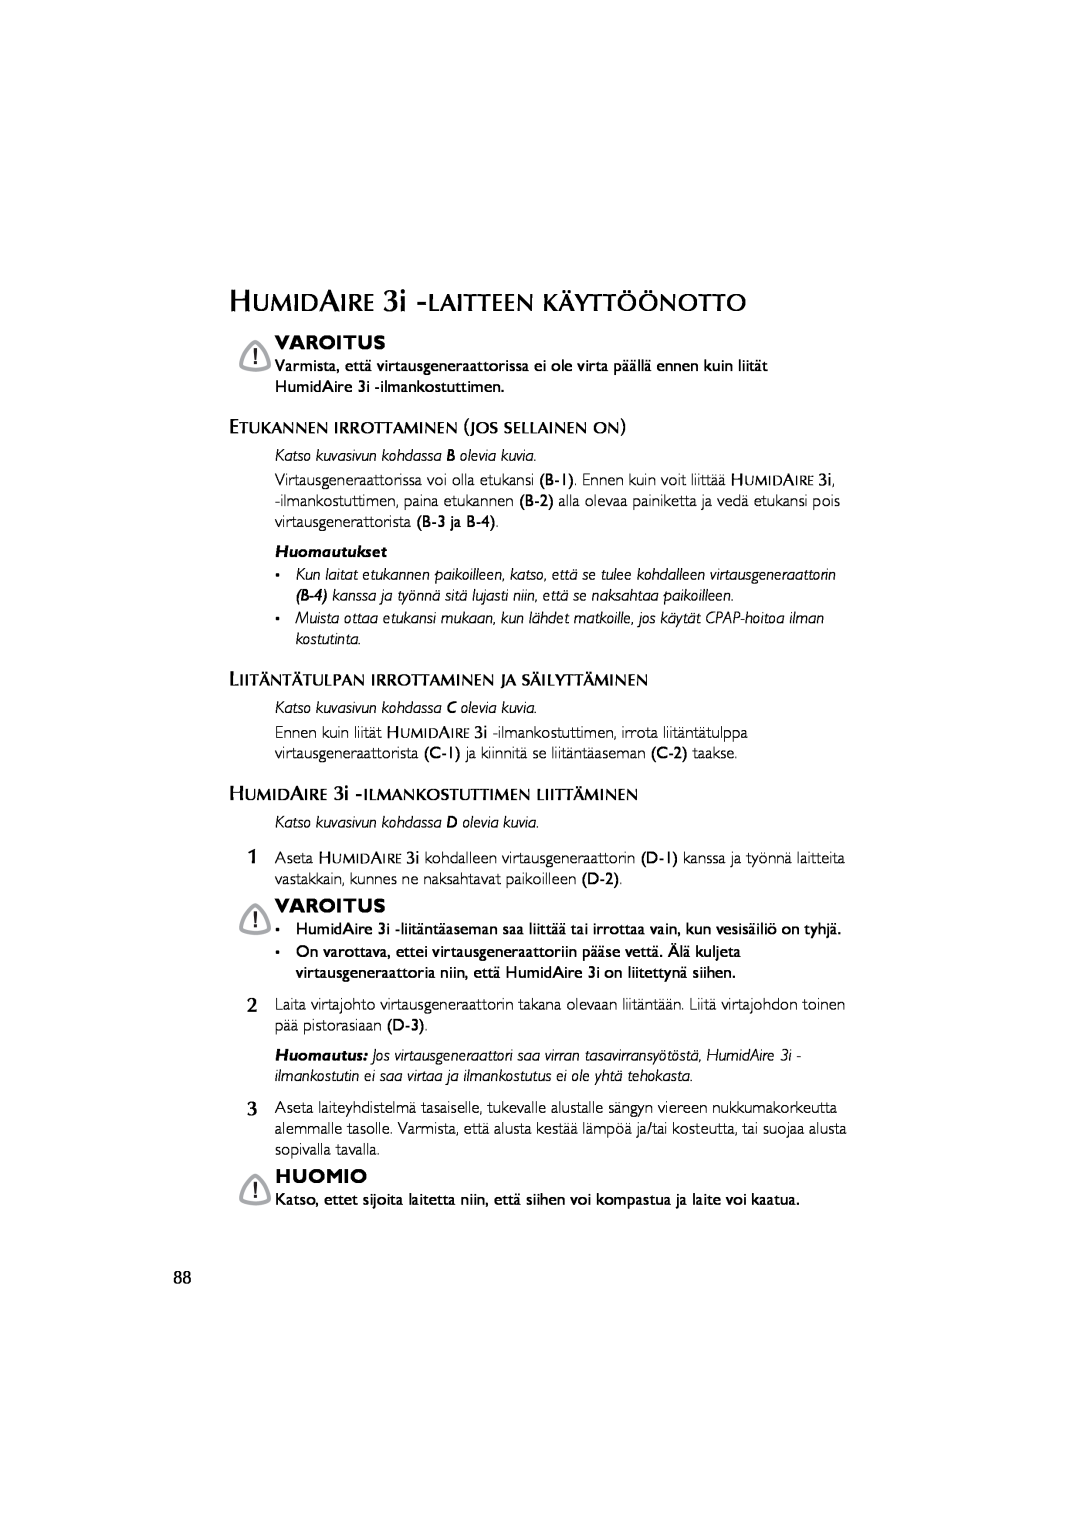 ResMed Humidifier user manual HUMIDAIRE 3i -LAITTEENKÄYTTÖÖNOTTO, Varoitus, Huomio, Katso kuvasivun kohdassa B olevia kuvia 